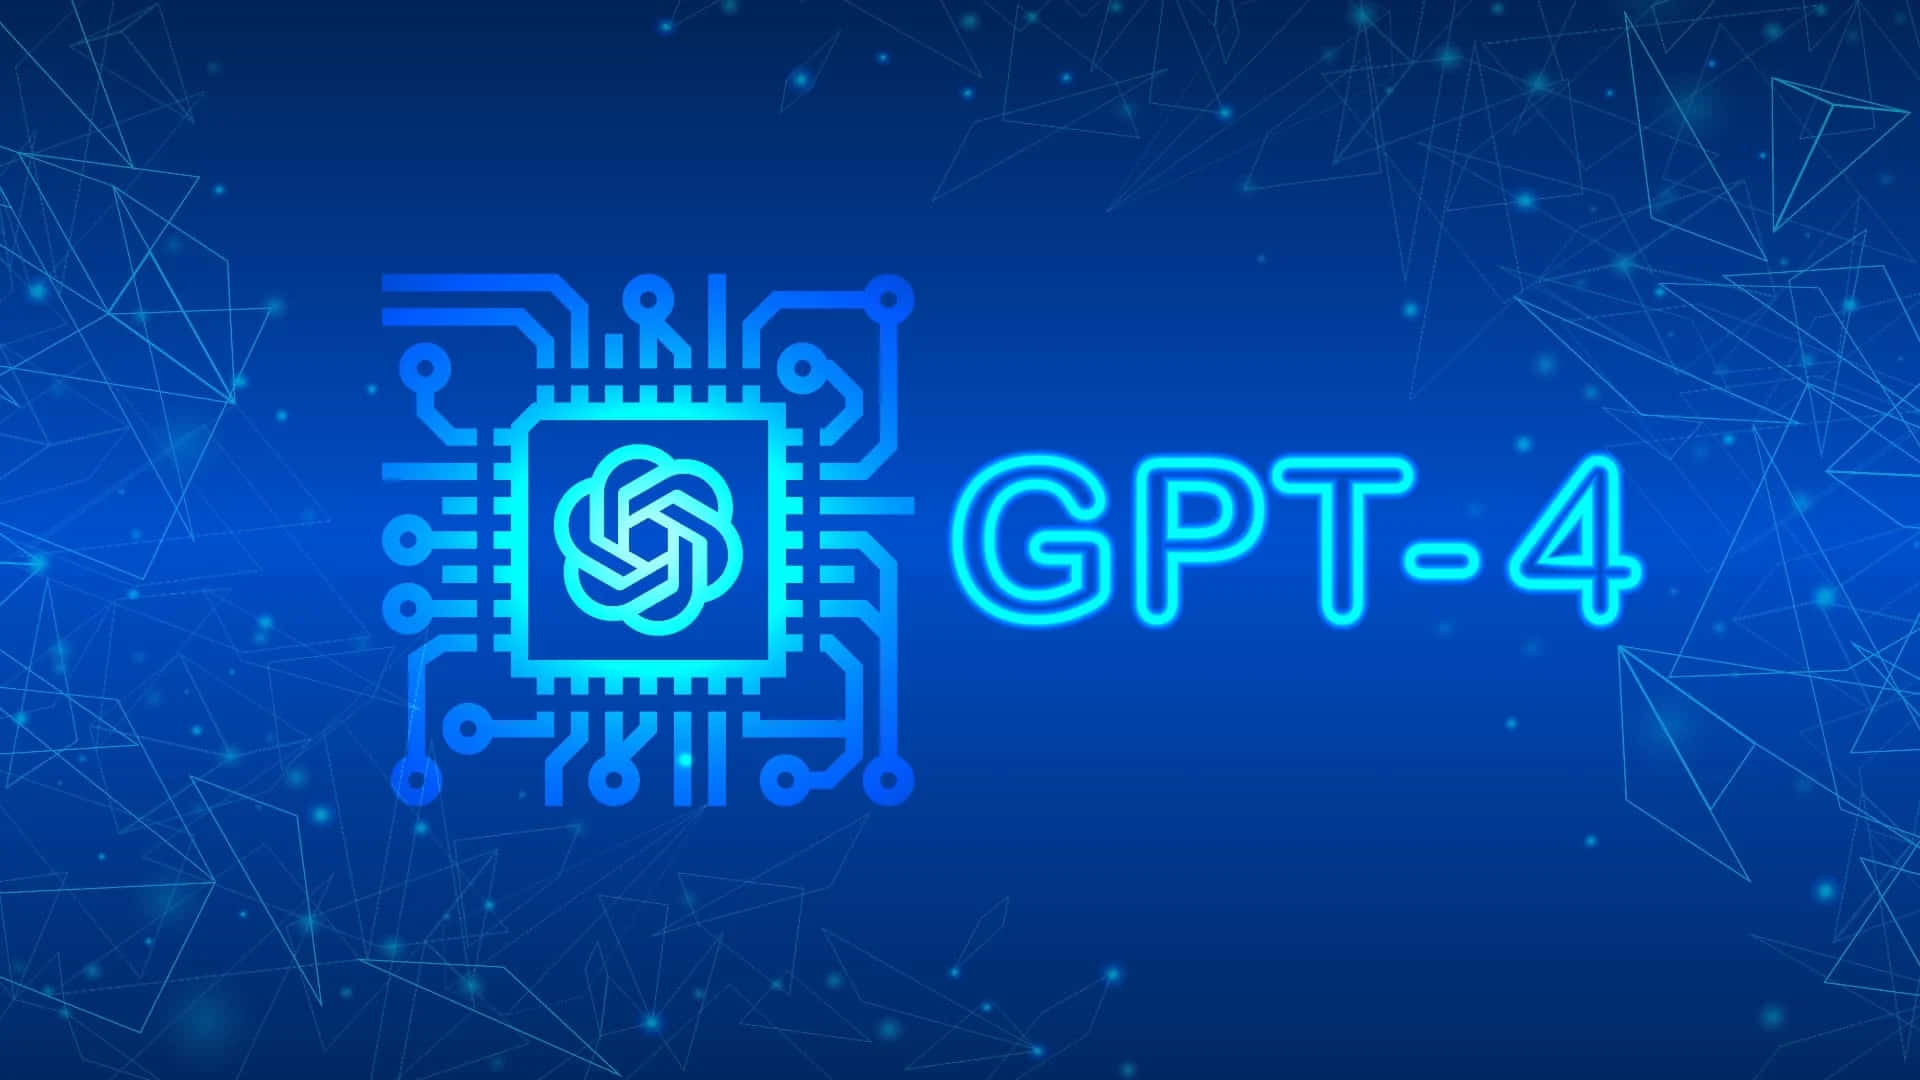 Gpt4, El Revolucionario Modelo De Inteligencia Artificial En Lenguaje. Fondo de pantalla